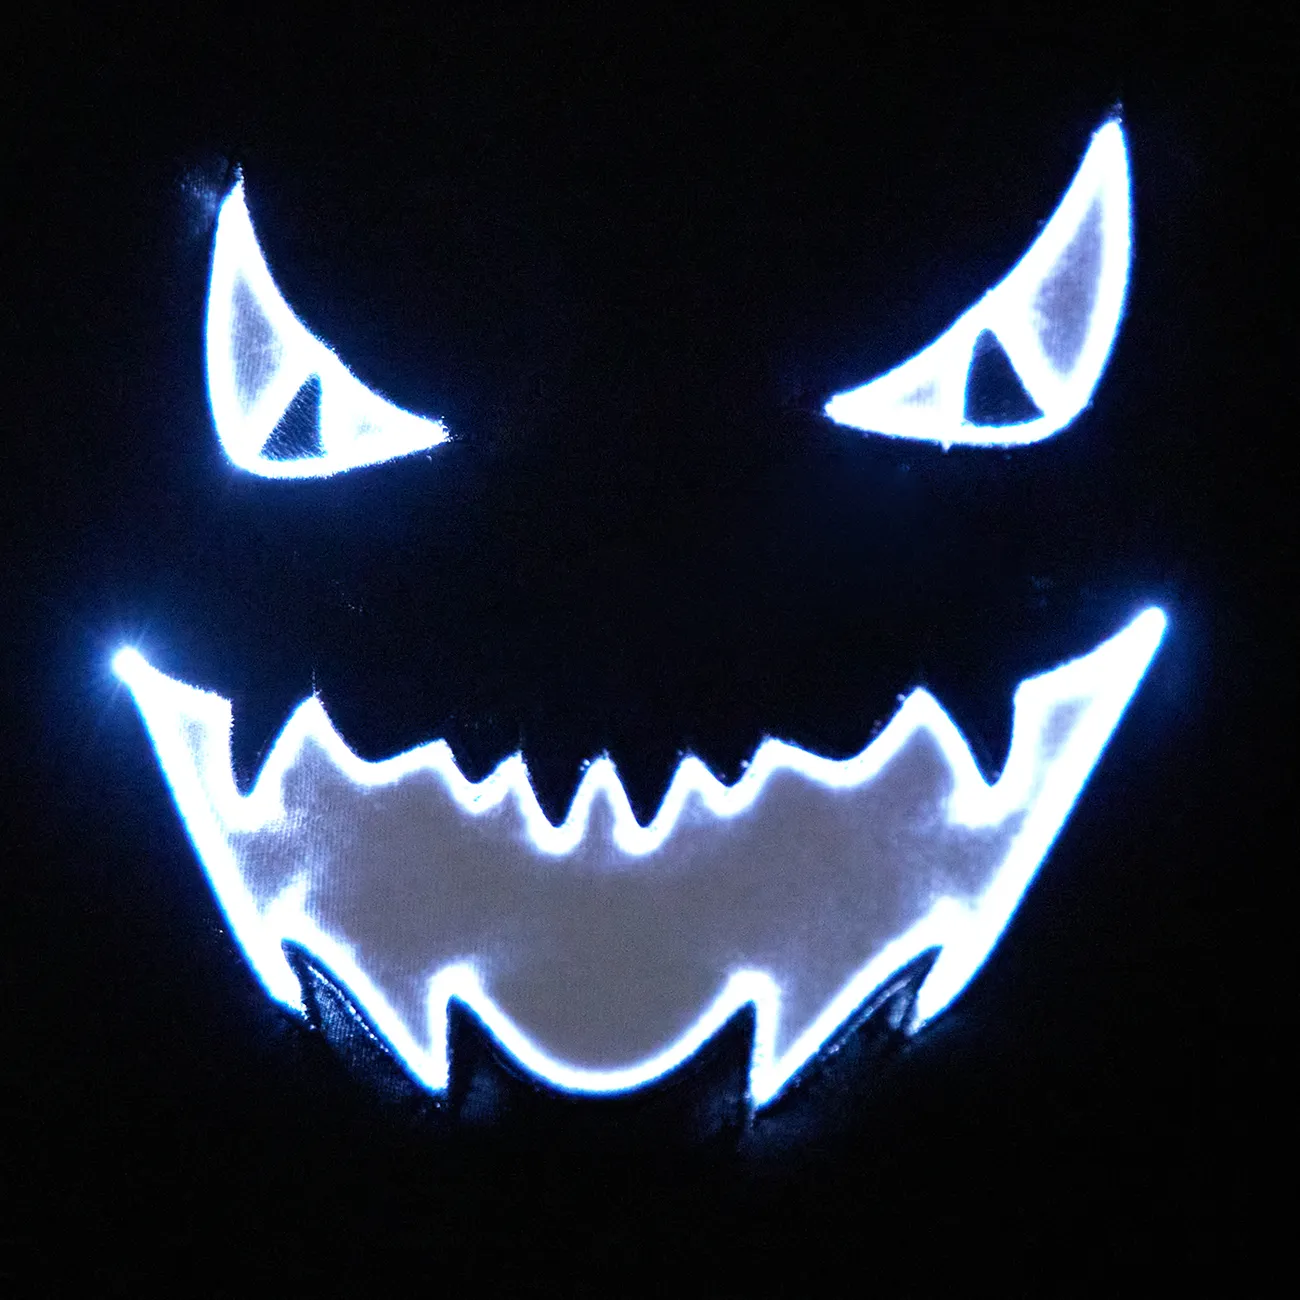 Go-Glow Halloween Iluminando Cabo Preto com Light Up Demon Face, incluindo controlador (bateria embutida) Preto e branco big image 1